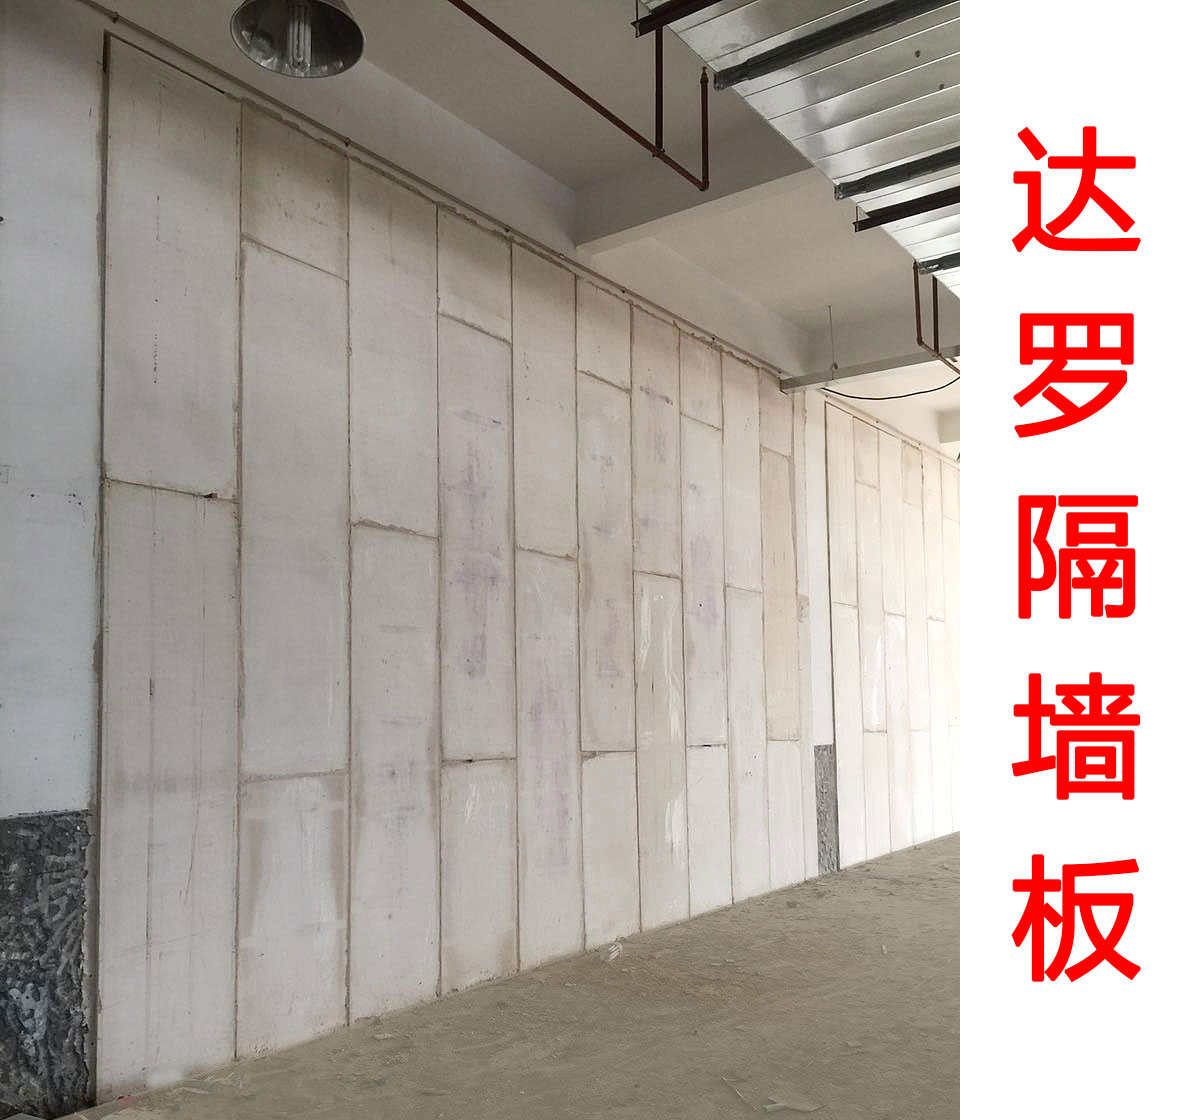 达罗隔墙板新型轻质保温隔热隔音建筑填充墙